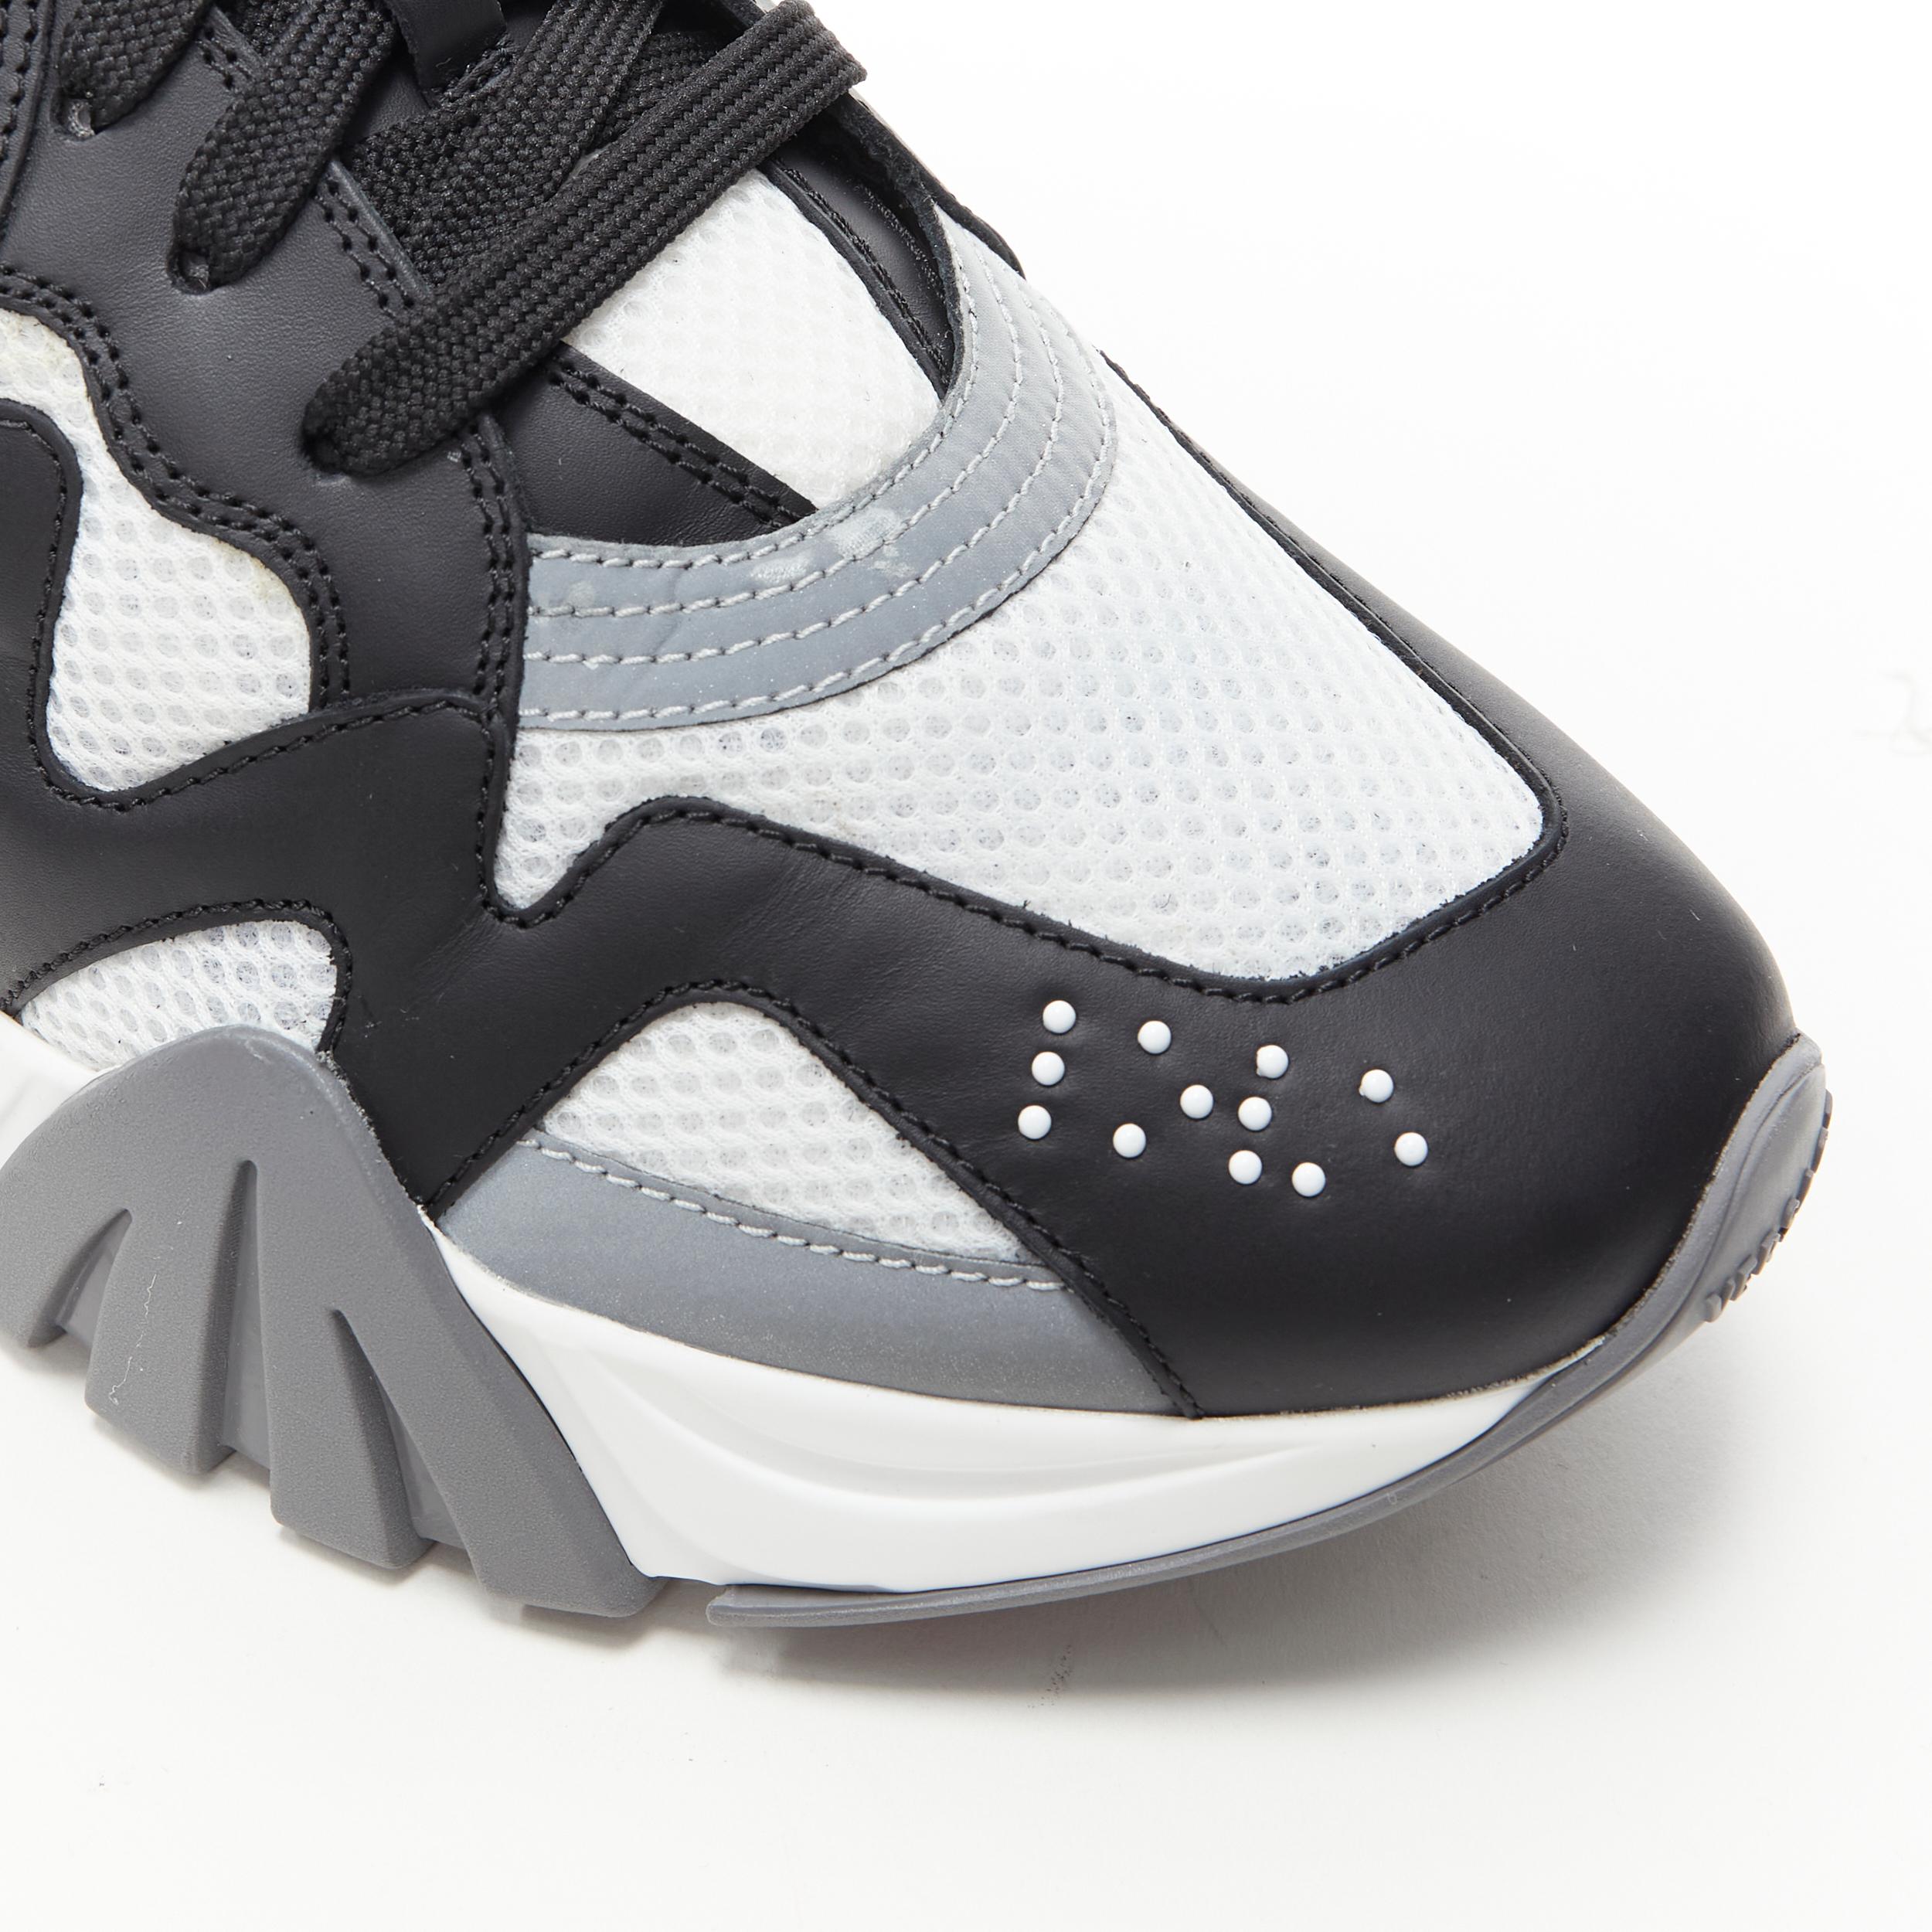 Men's new VERSACE Squalo black grey refflective low top sneakers